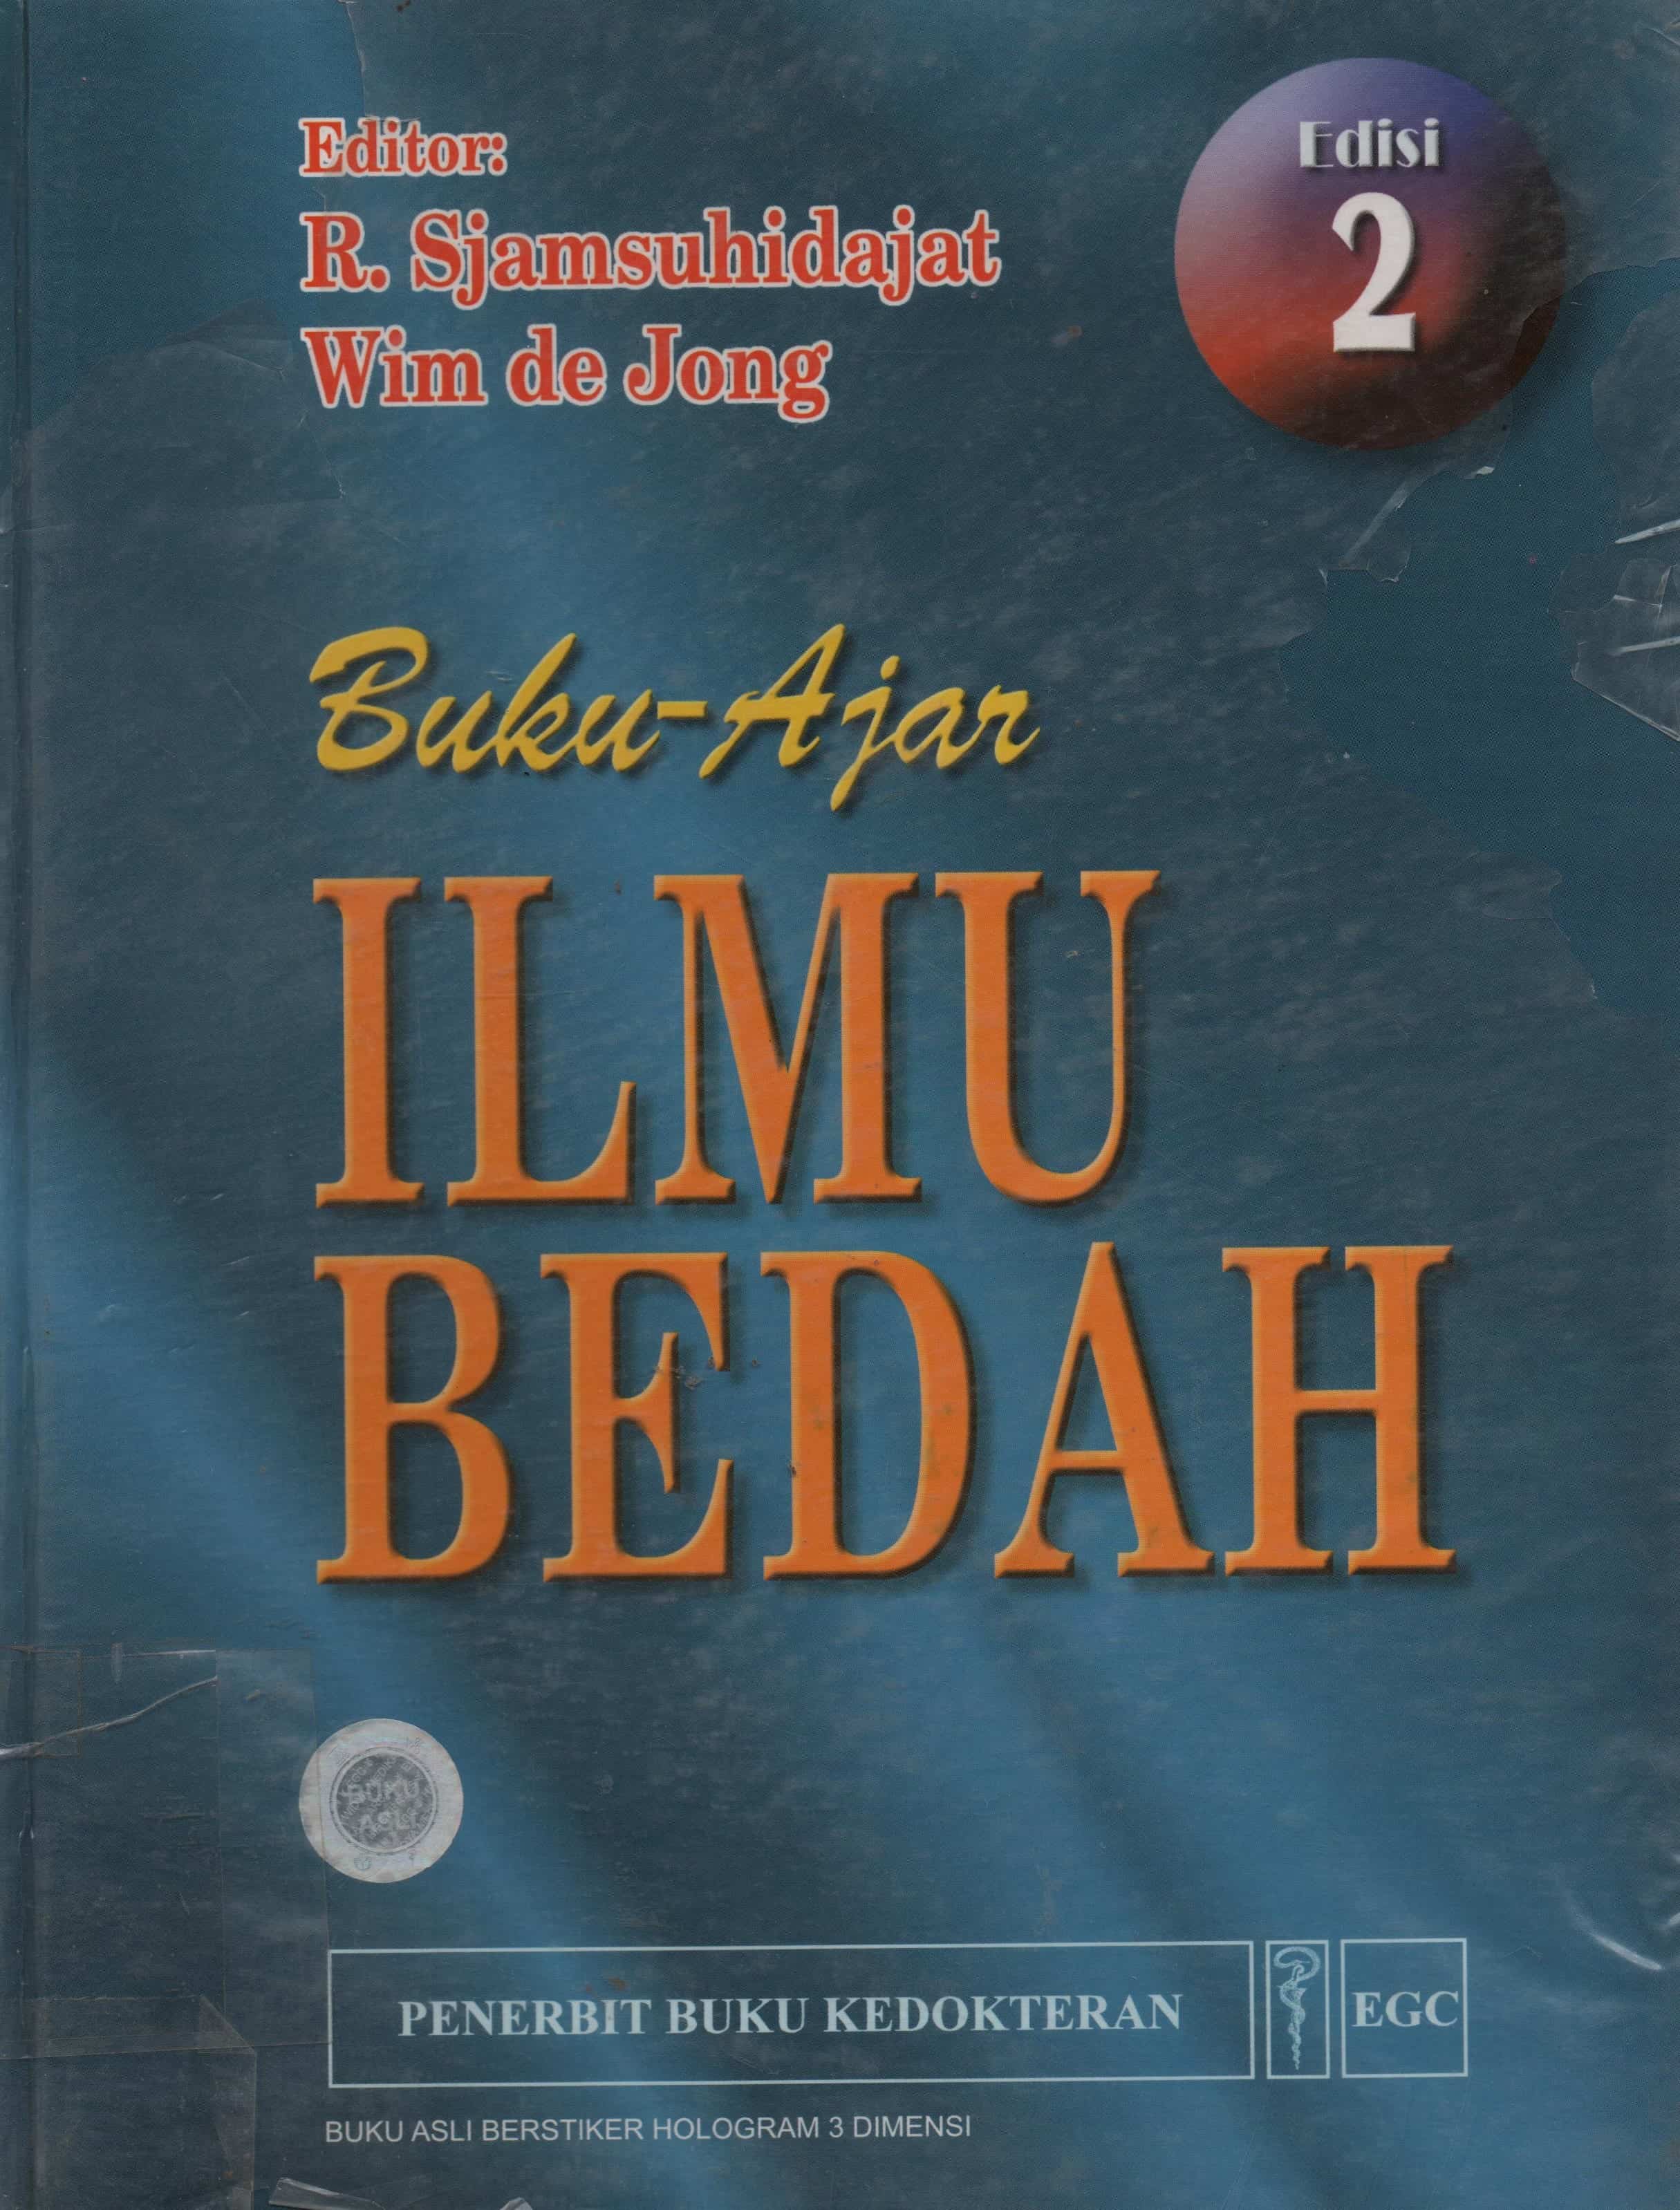 Image of Buku Ajar Ilmu Bedah Edisi 2